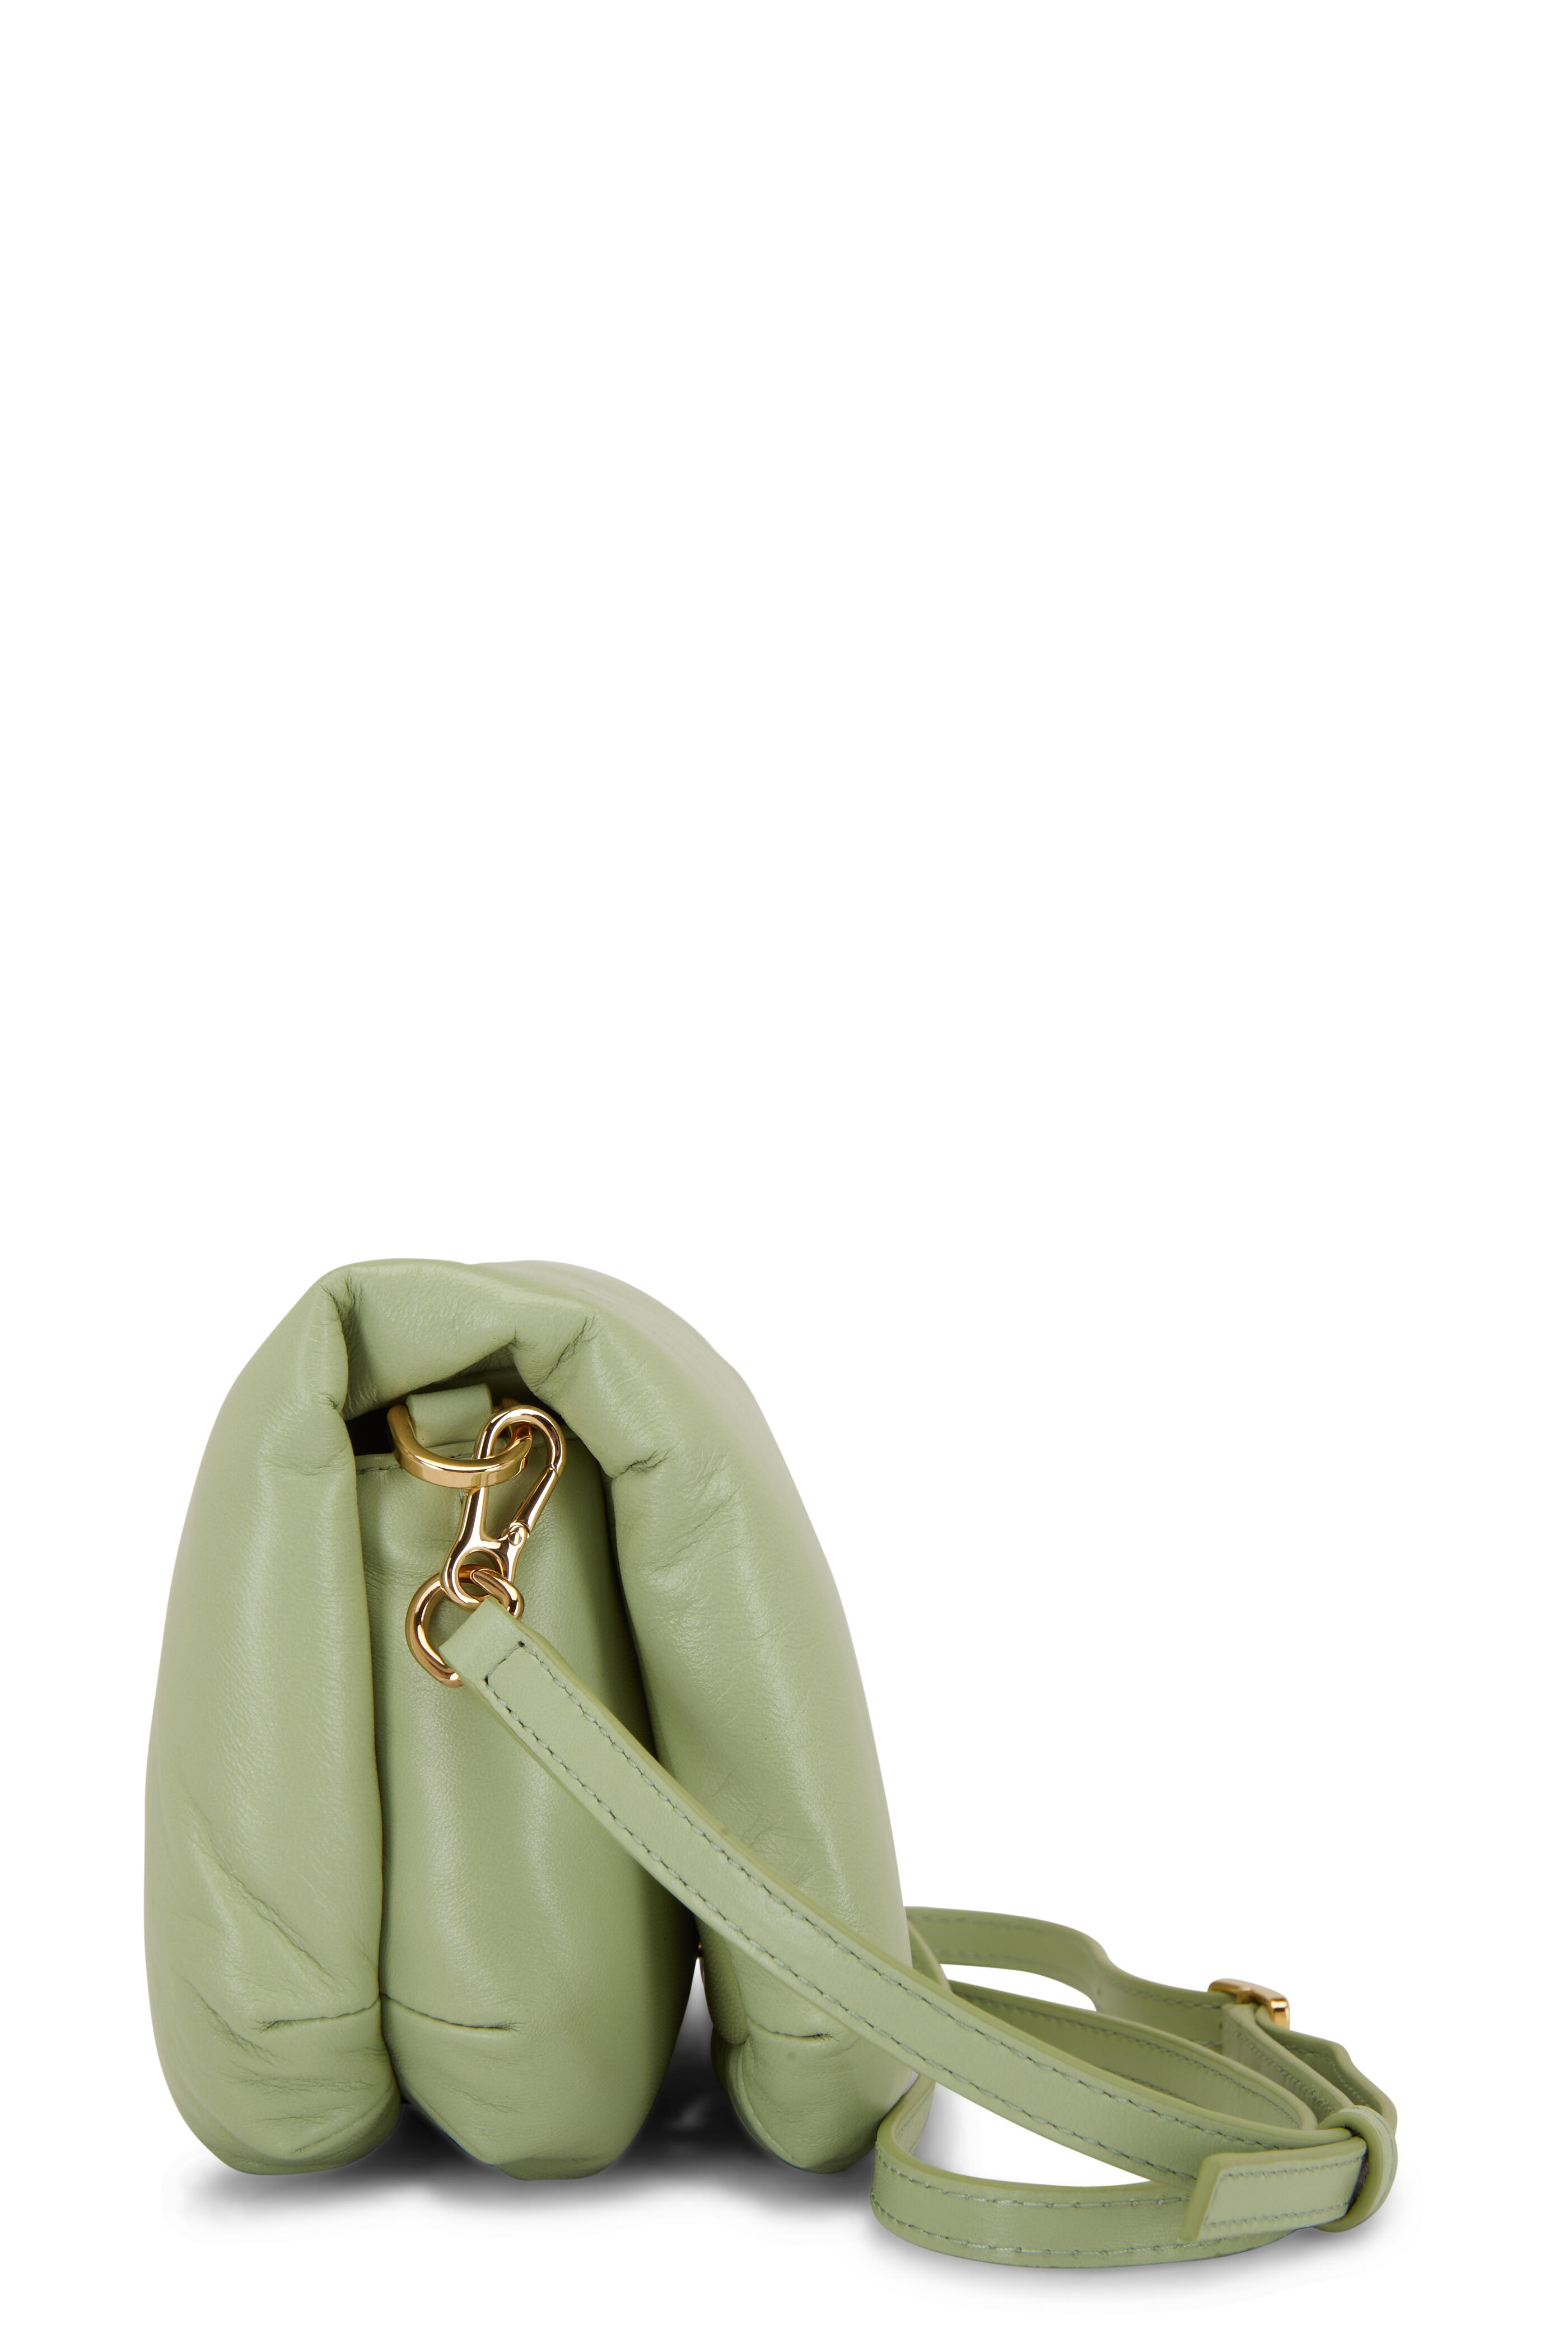 Buy Loewe Goya Puffer Mini Bag 'Lime Green' - A896W56X01 4280